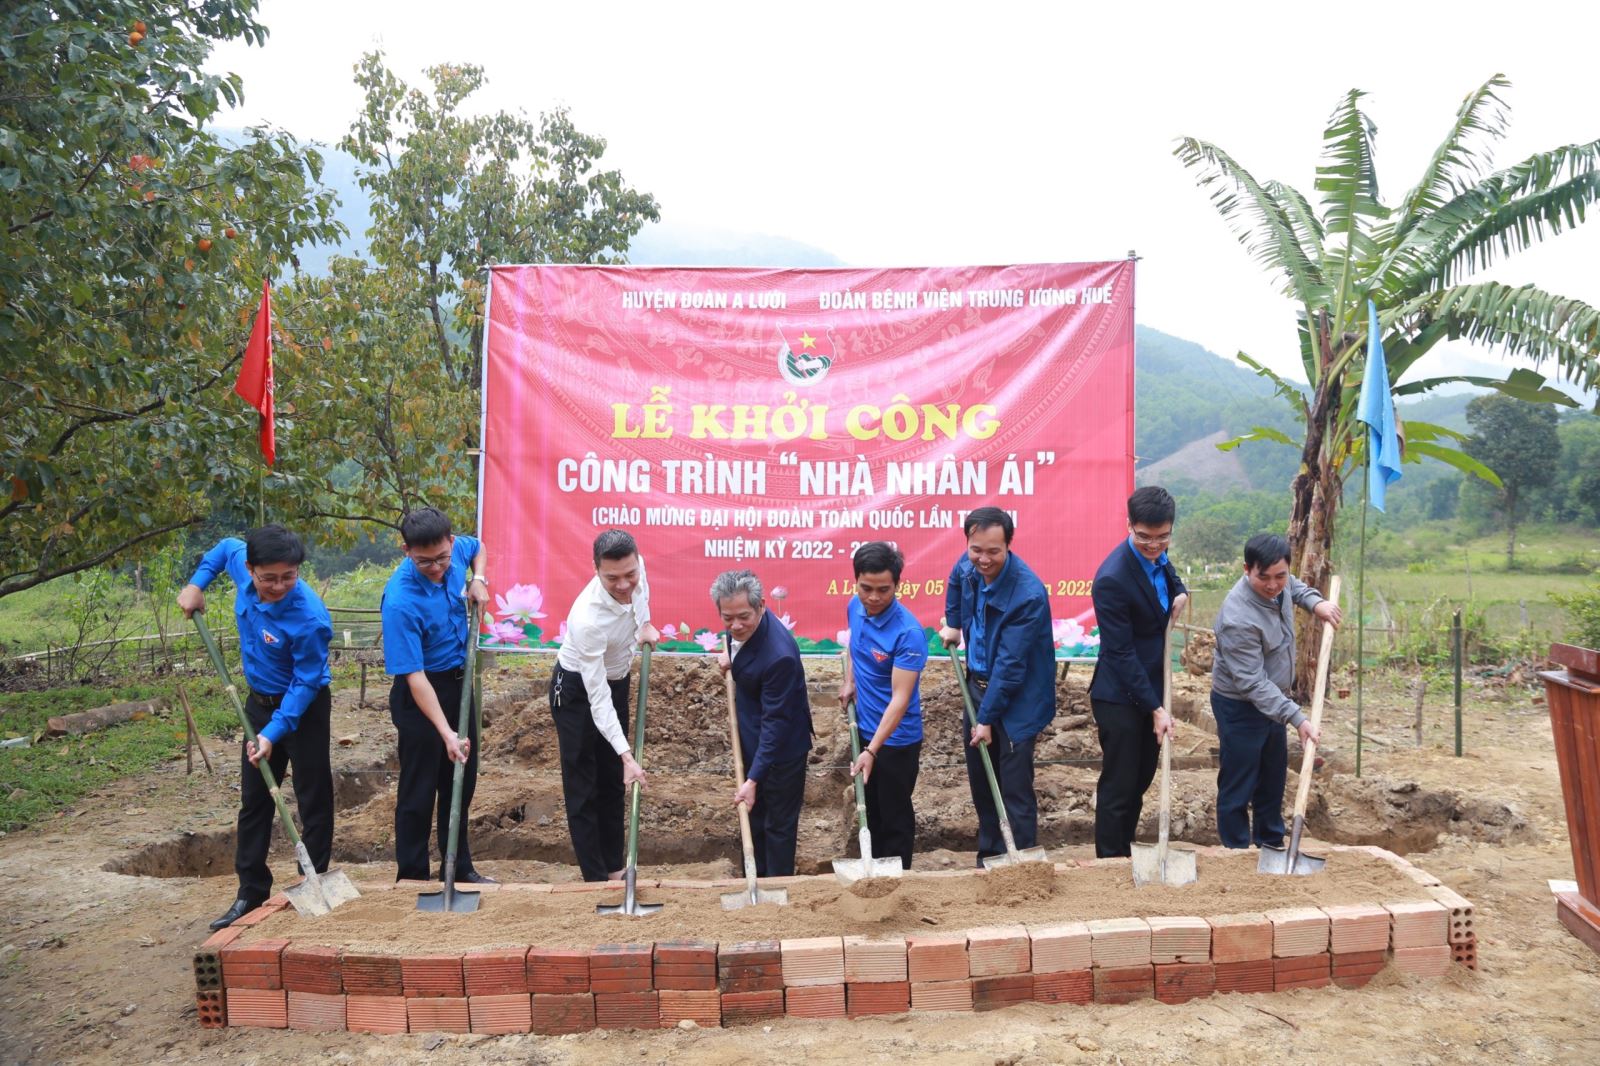 Đoàn Thanh niên BVTW Huế phối hợp với huyện Đoàn A Lưới (tổ chức lễ khởi công xây dựng công trình “Nhà nhân ái” ở xã Trung Sơn (huyện A Lưới).